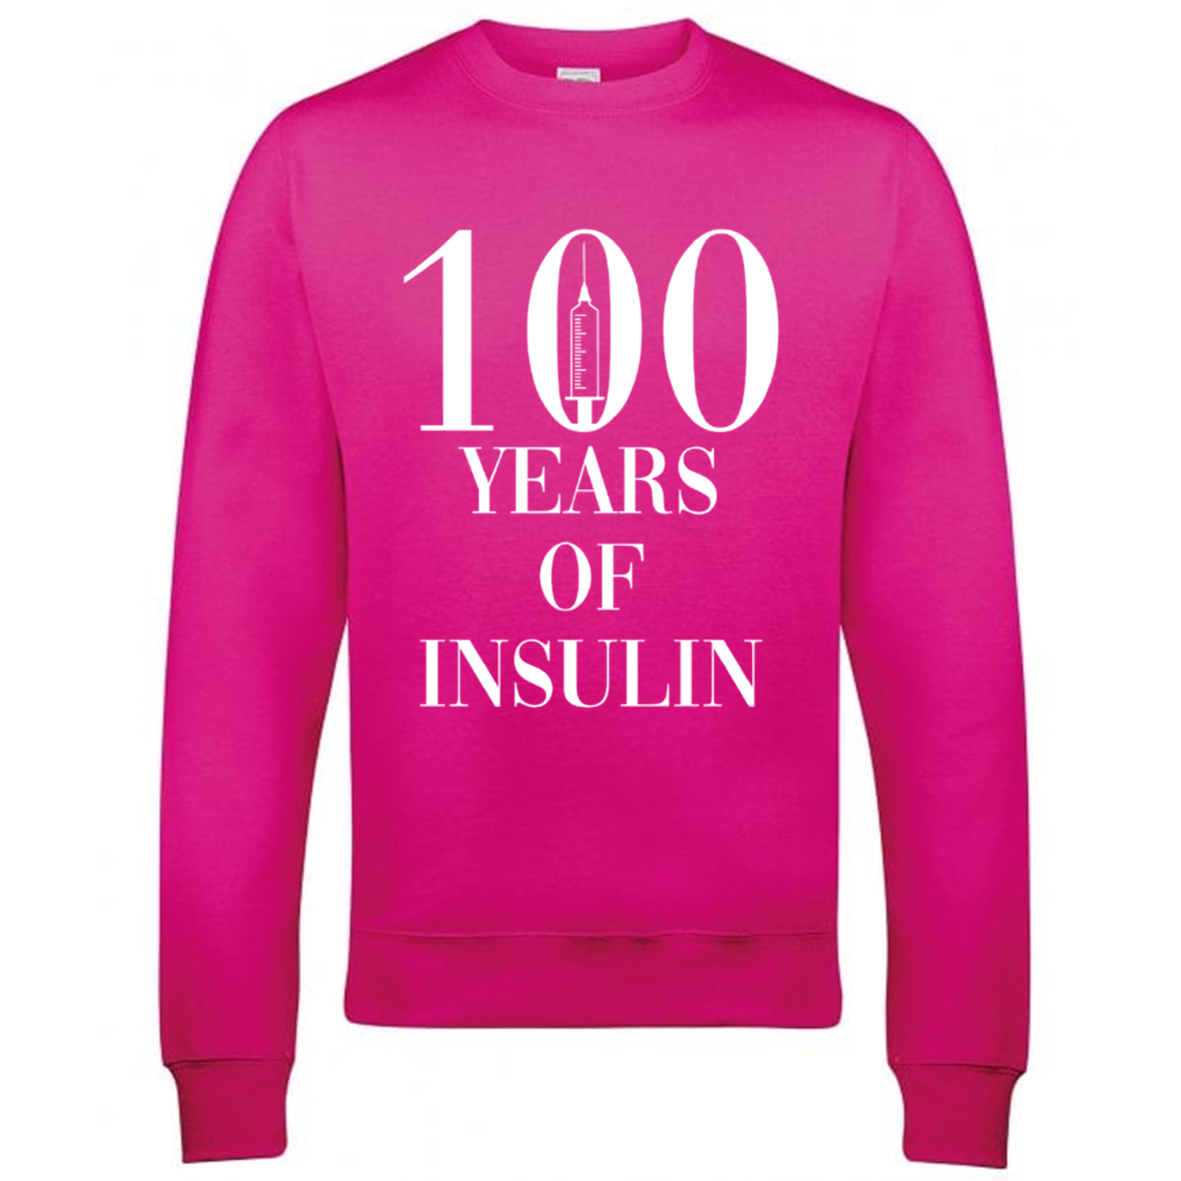 100 Years Of Insulin Sweatshirt